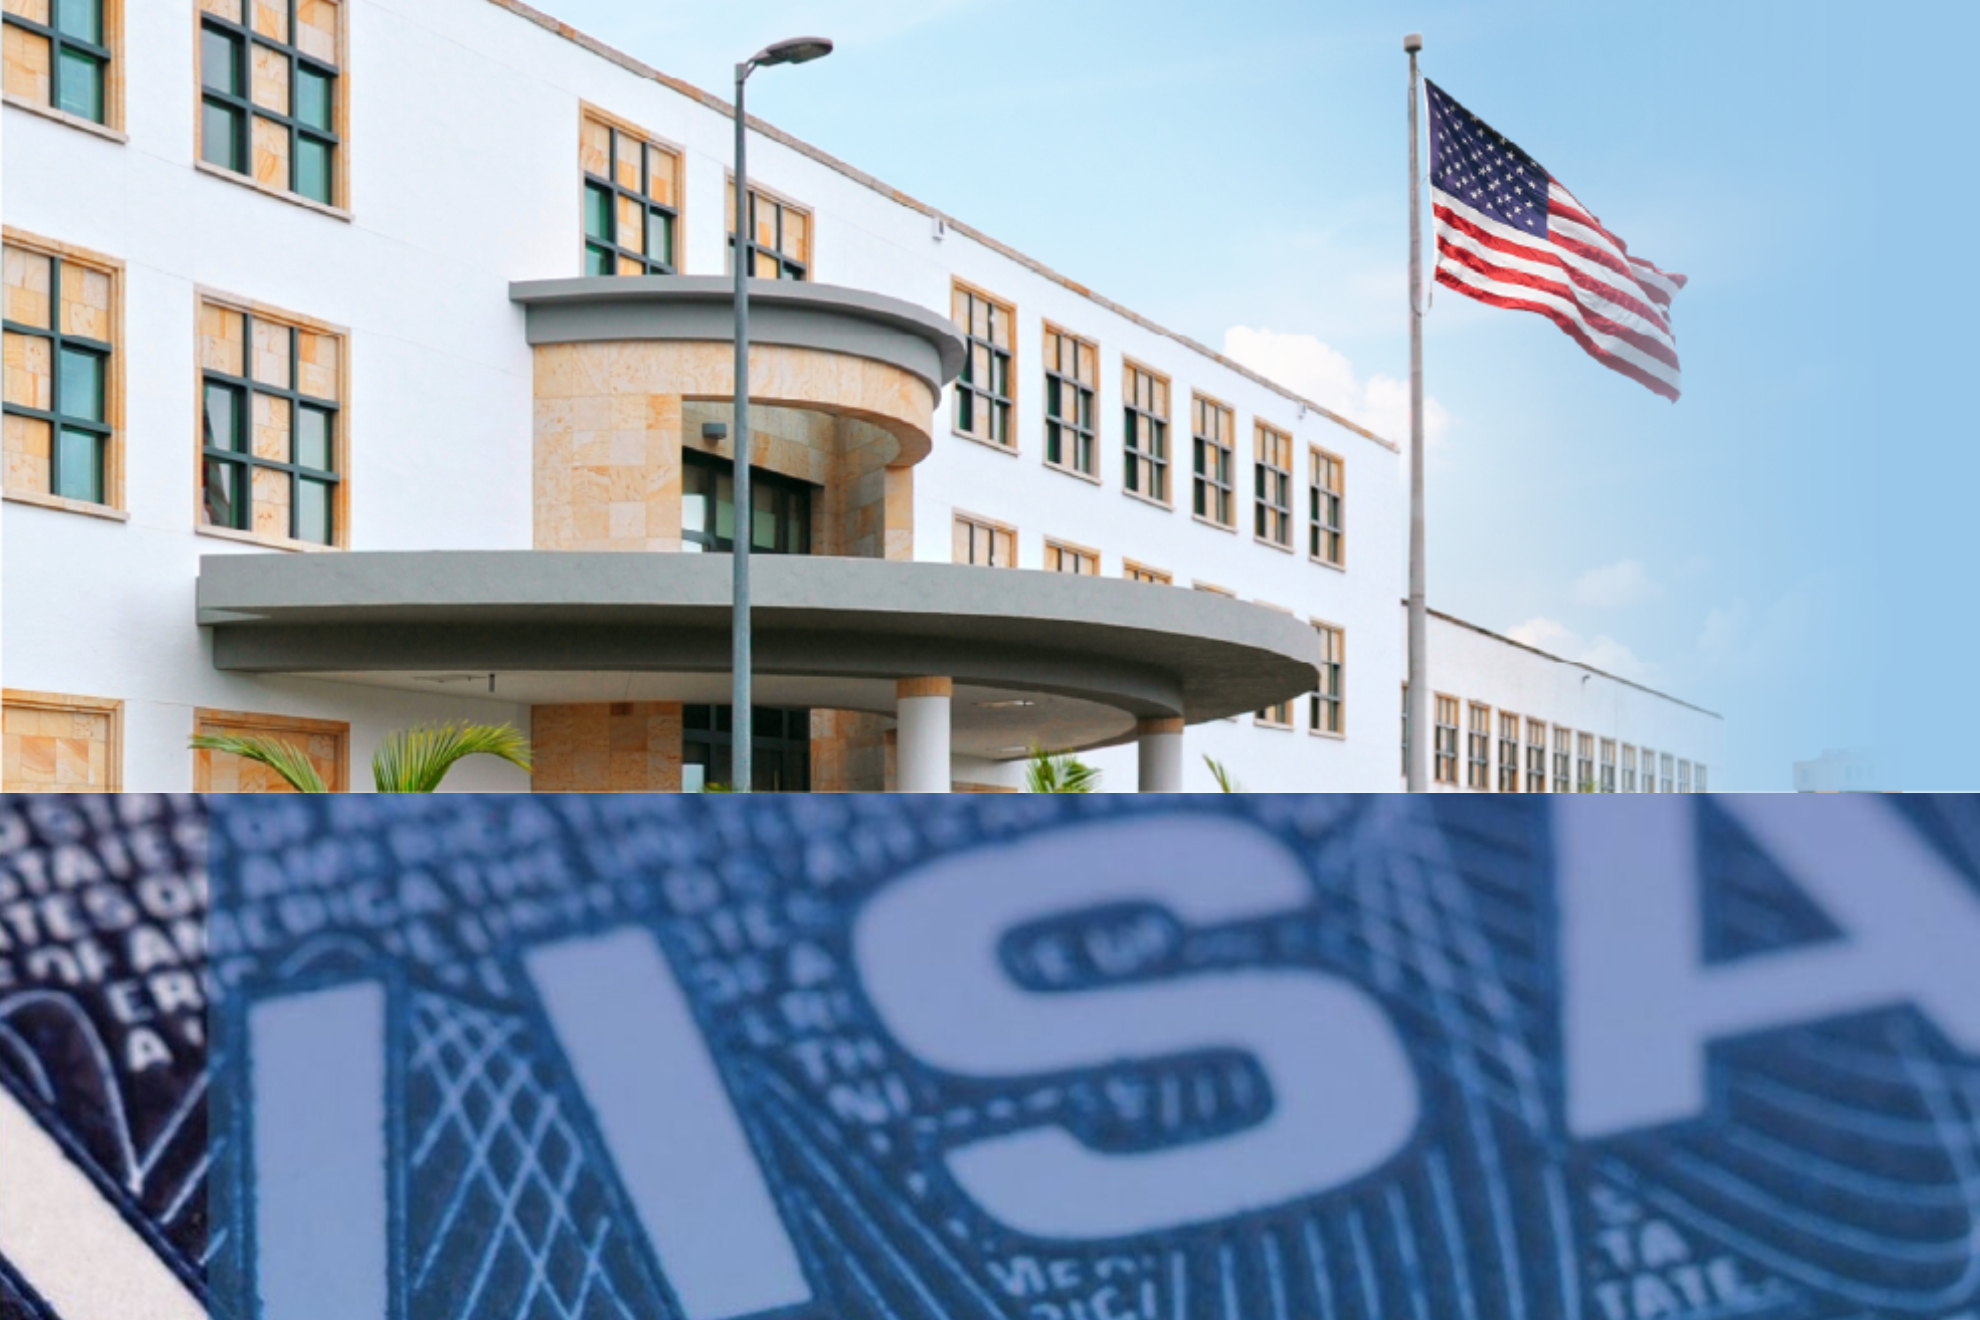 Exoficial de visas da tips y consejos para aprobar entrevista y obtener visa para Estados Unidos